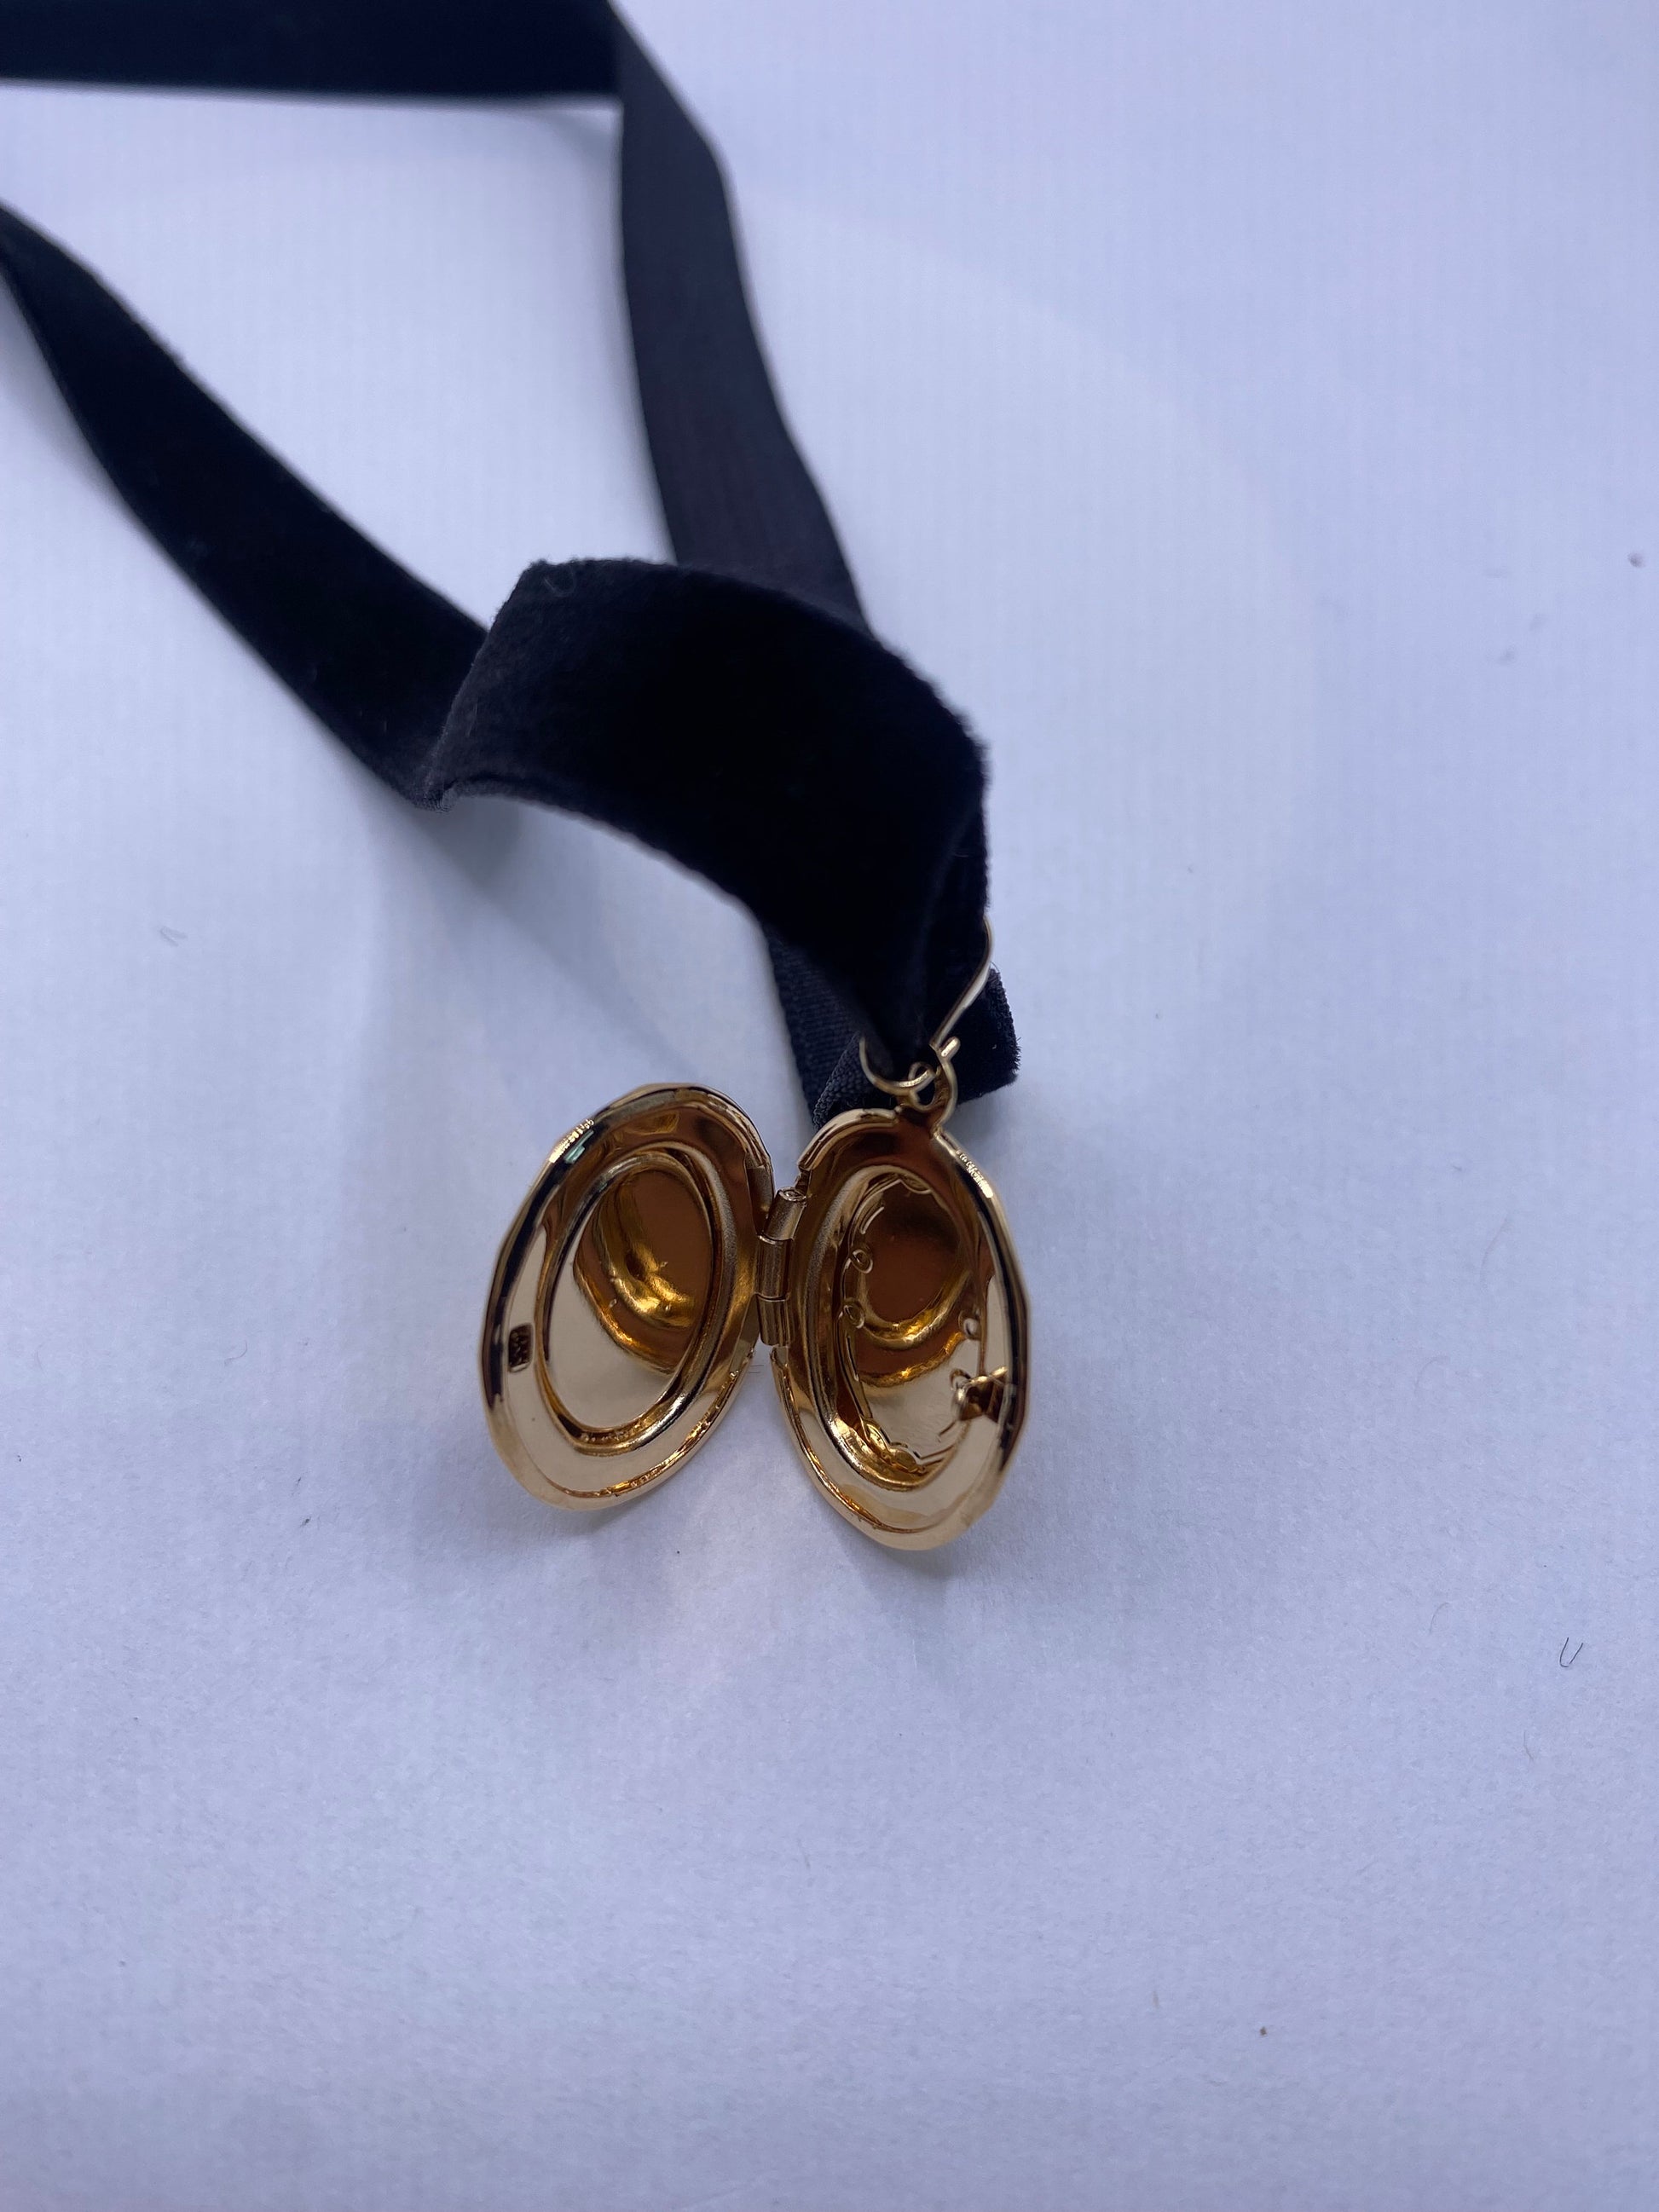 Vintage Oval Locket Choker Gold Filled Necklace